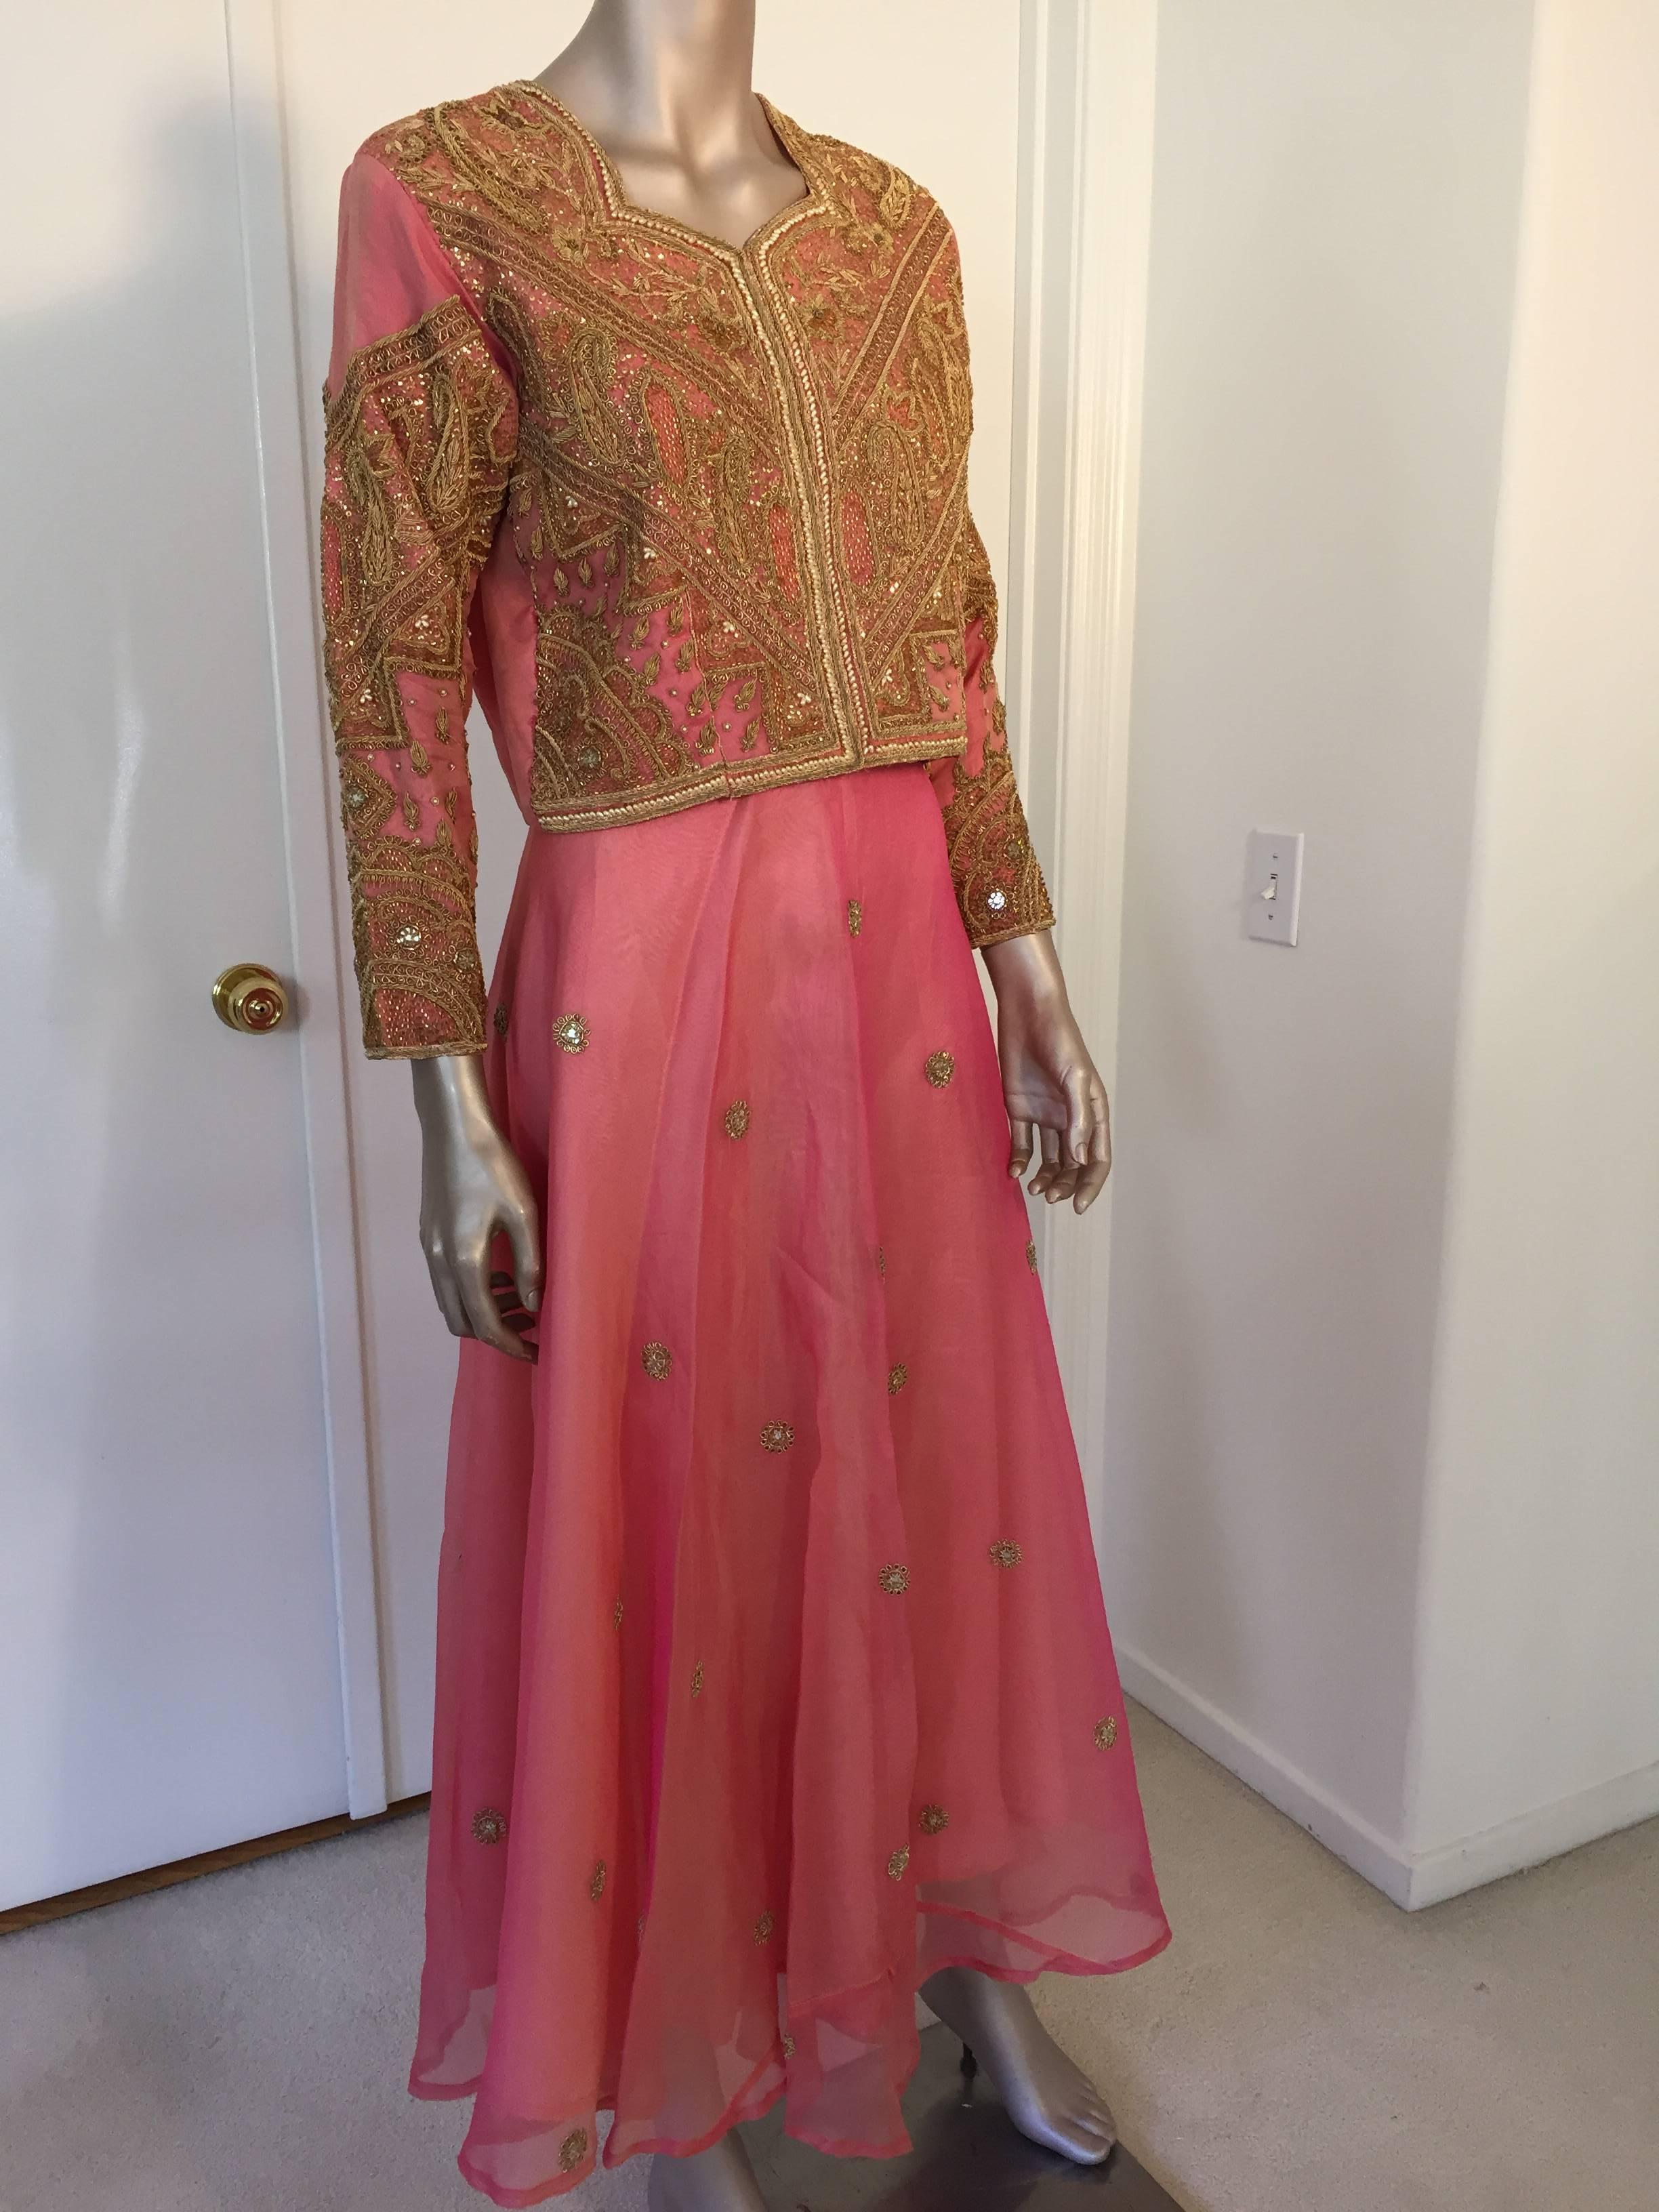 Magnifique robe de soirée 3 pièces vintage des années 1980 brodée en taffetas de soie rose sur or, gilet, jupe et châle assorti.
Ce superbe blazer de soirée en taffetas de soie rose d'Anglo Raj, réalisé sur mesure pour les mariages, est orné de